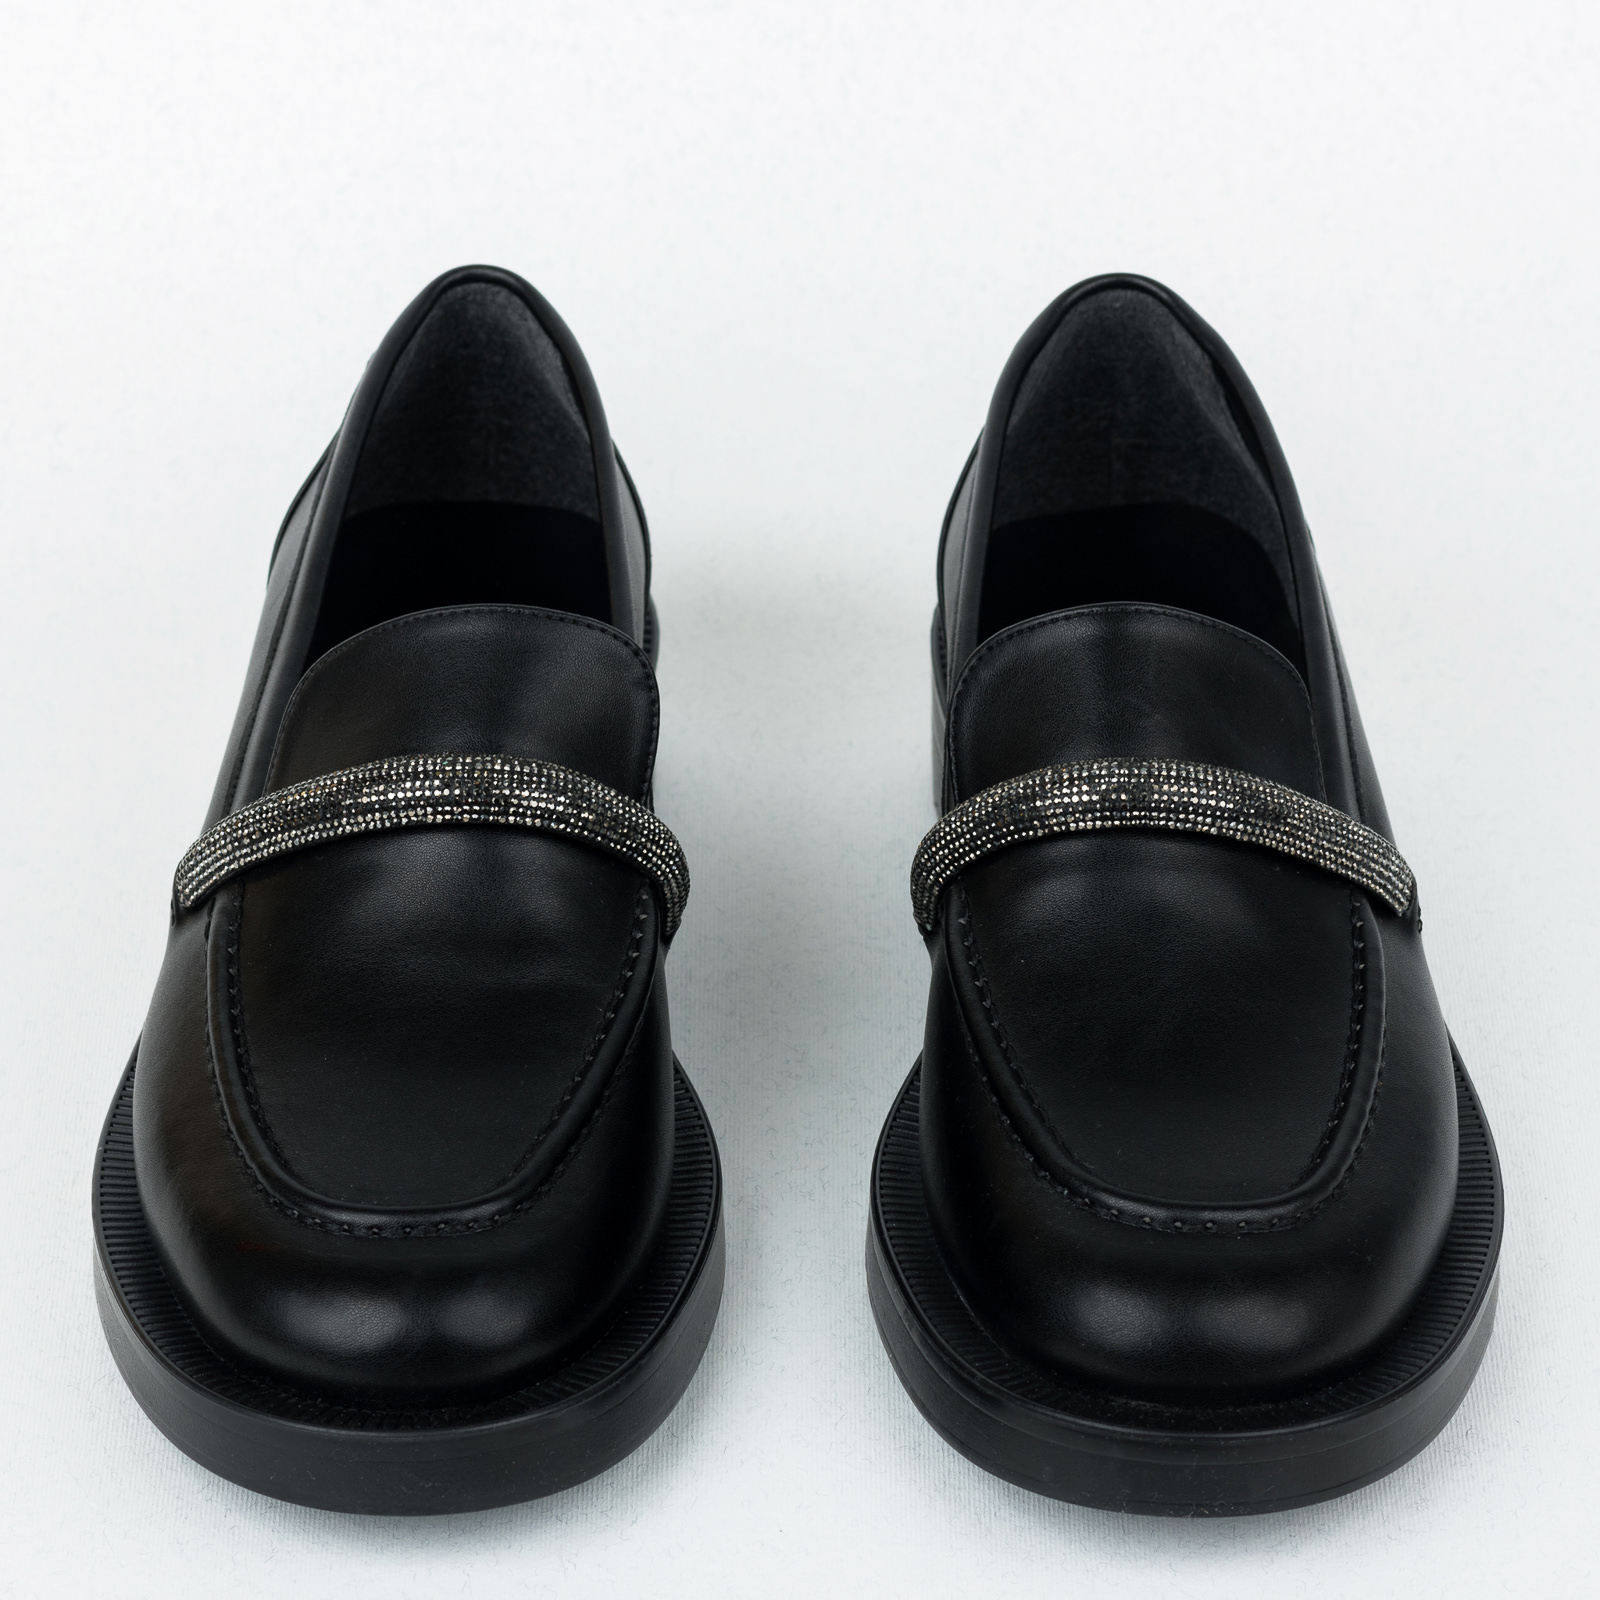 Ženske cipele B589 - CRNA